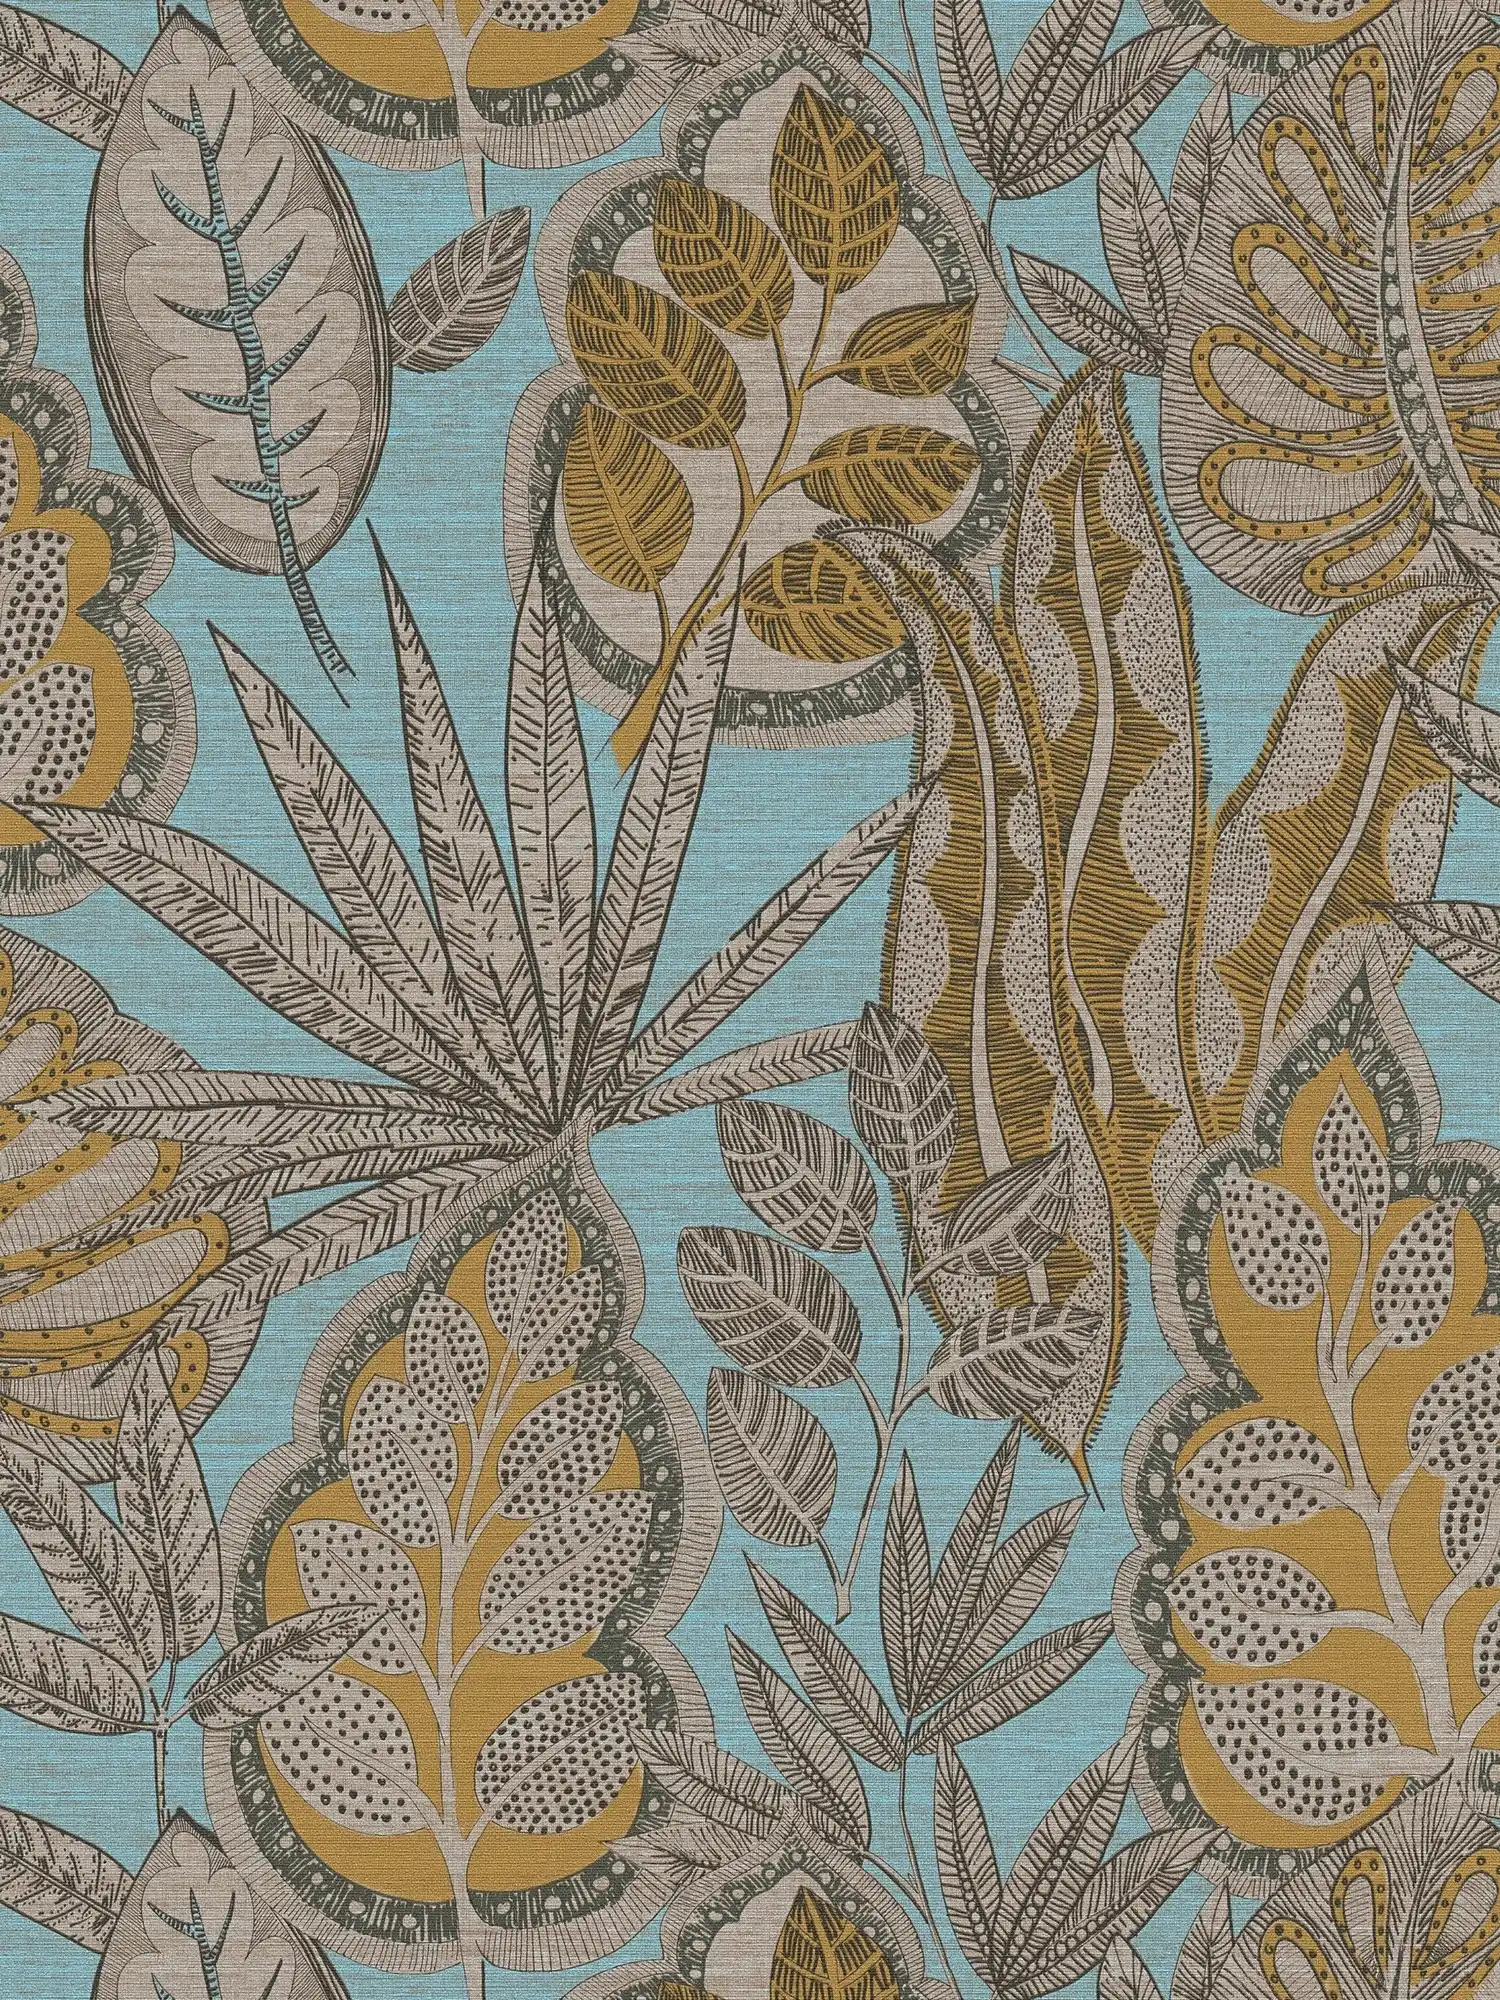         Papel pintado tejido-no tejido floral en estilo gráfico con estructura ligera, mate - azul claro, amarillo, marrón
    